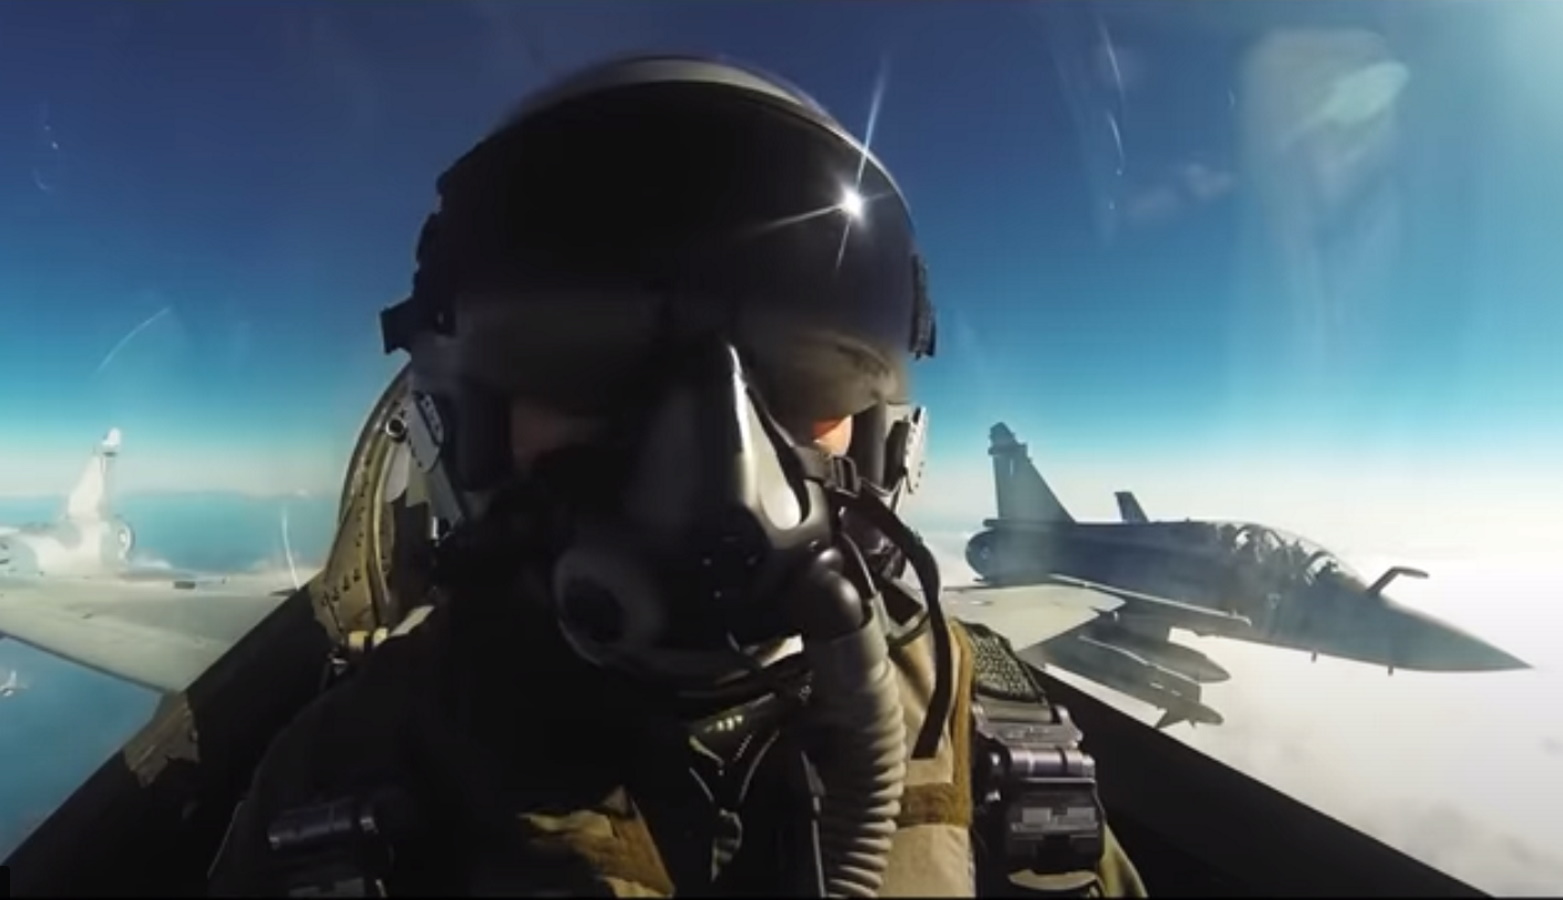 Σχολή Ικάρων: Το εντυπωσιακό βίντεο της Πολεμικής Αεροπορίας για τους νέους κυρίαρχους των αιθέρων